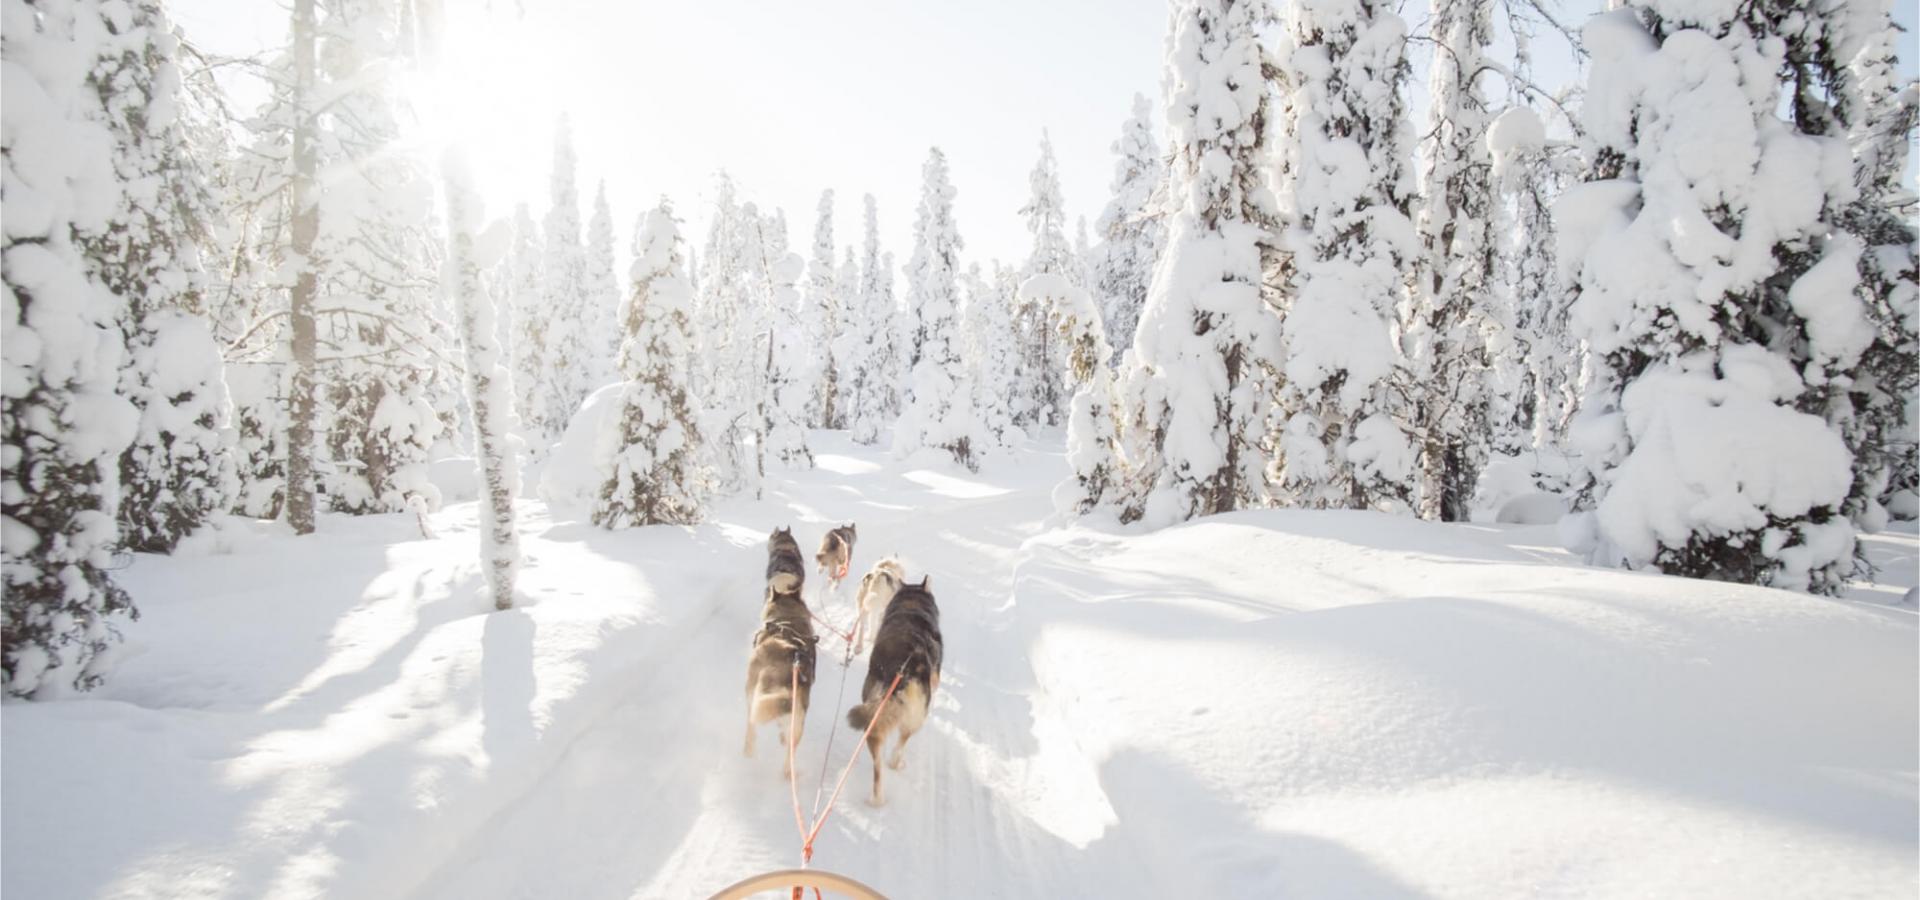 Bakom ett hundspann i djup snö i skogen - Foto Shutterstock / VisitTo